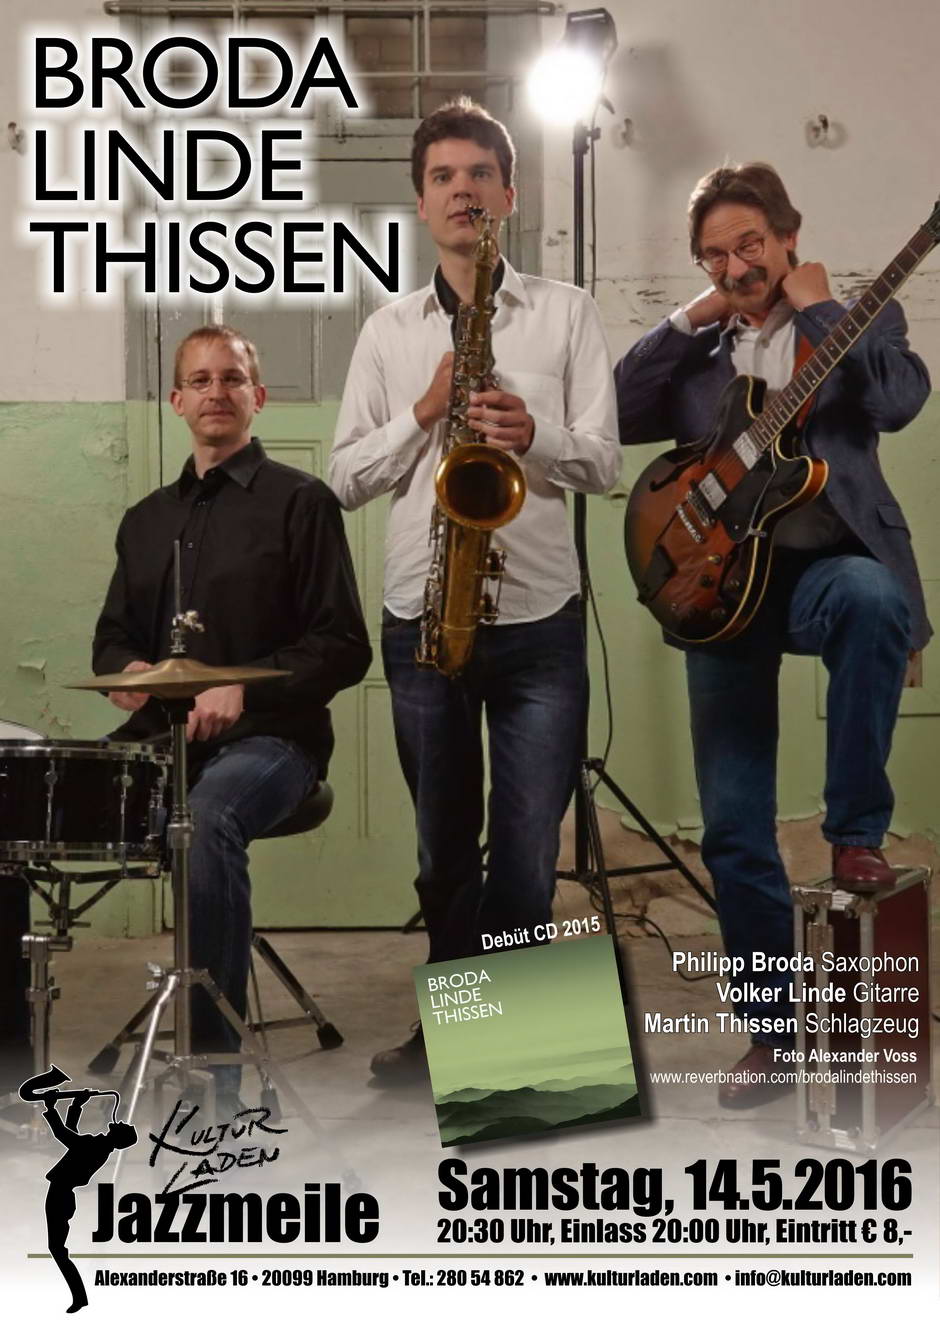 Plakat Mail Jazzmeile presents: Broda Linde Thissen  jazzmeile